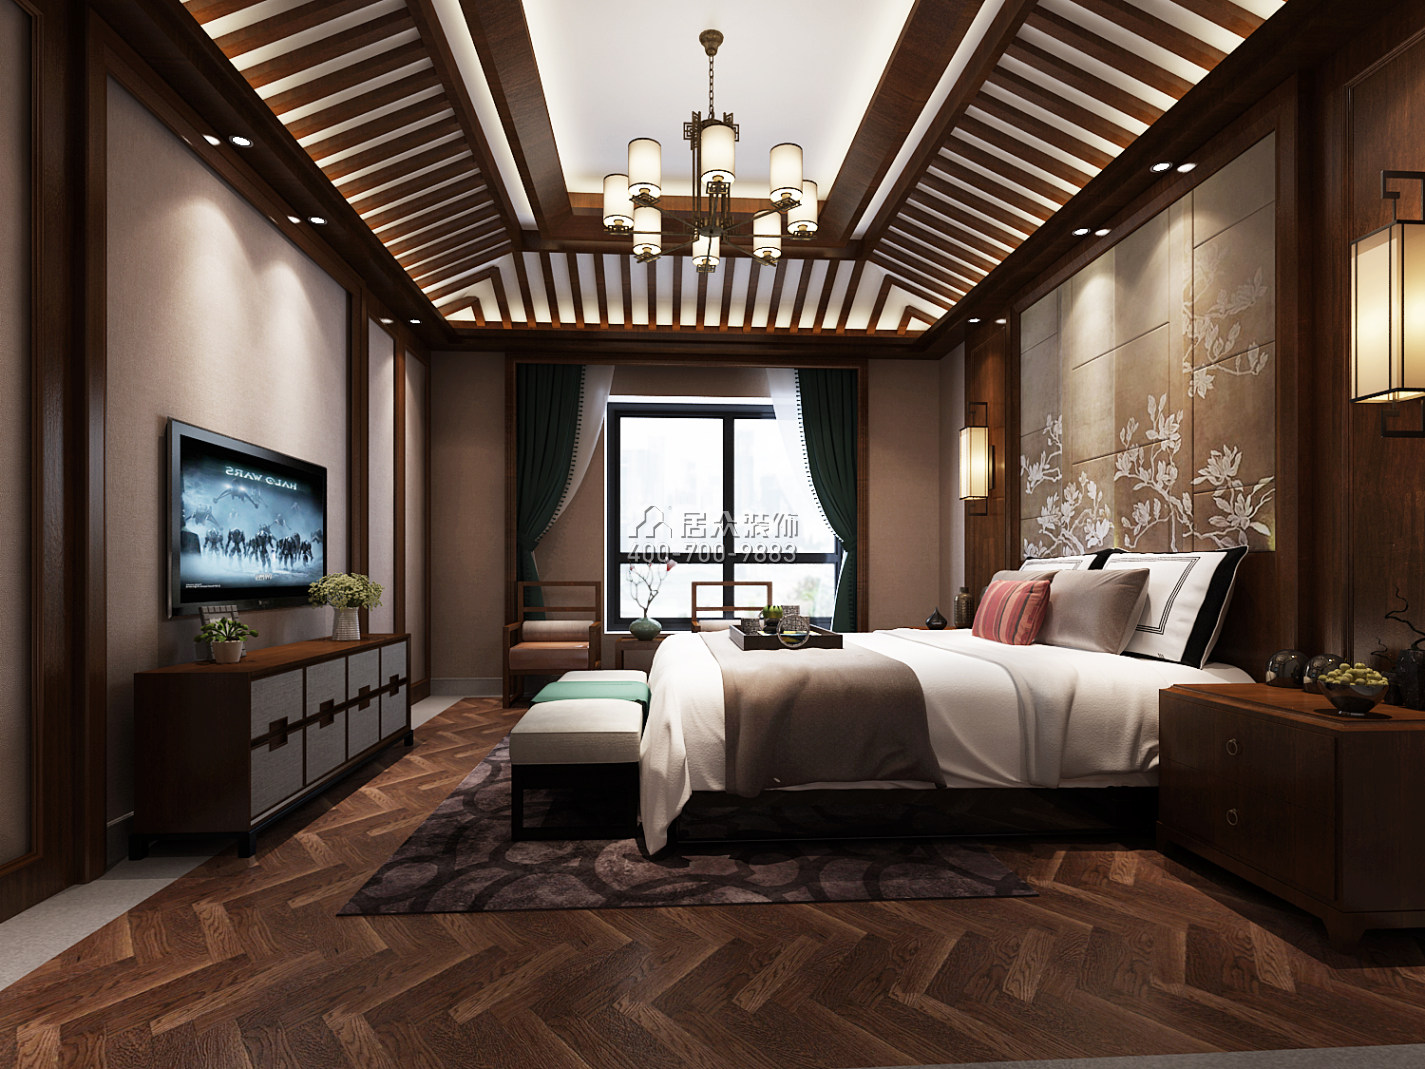 天利天鹅湾450平方米中式风格别墅户型卧室装修效果图